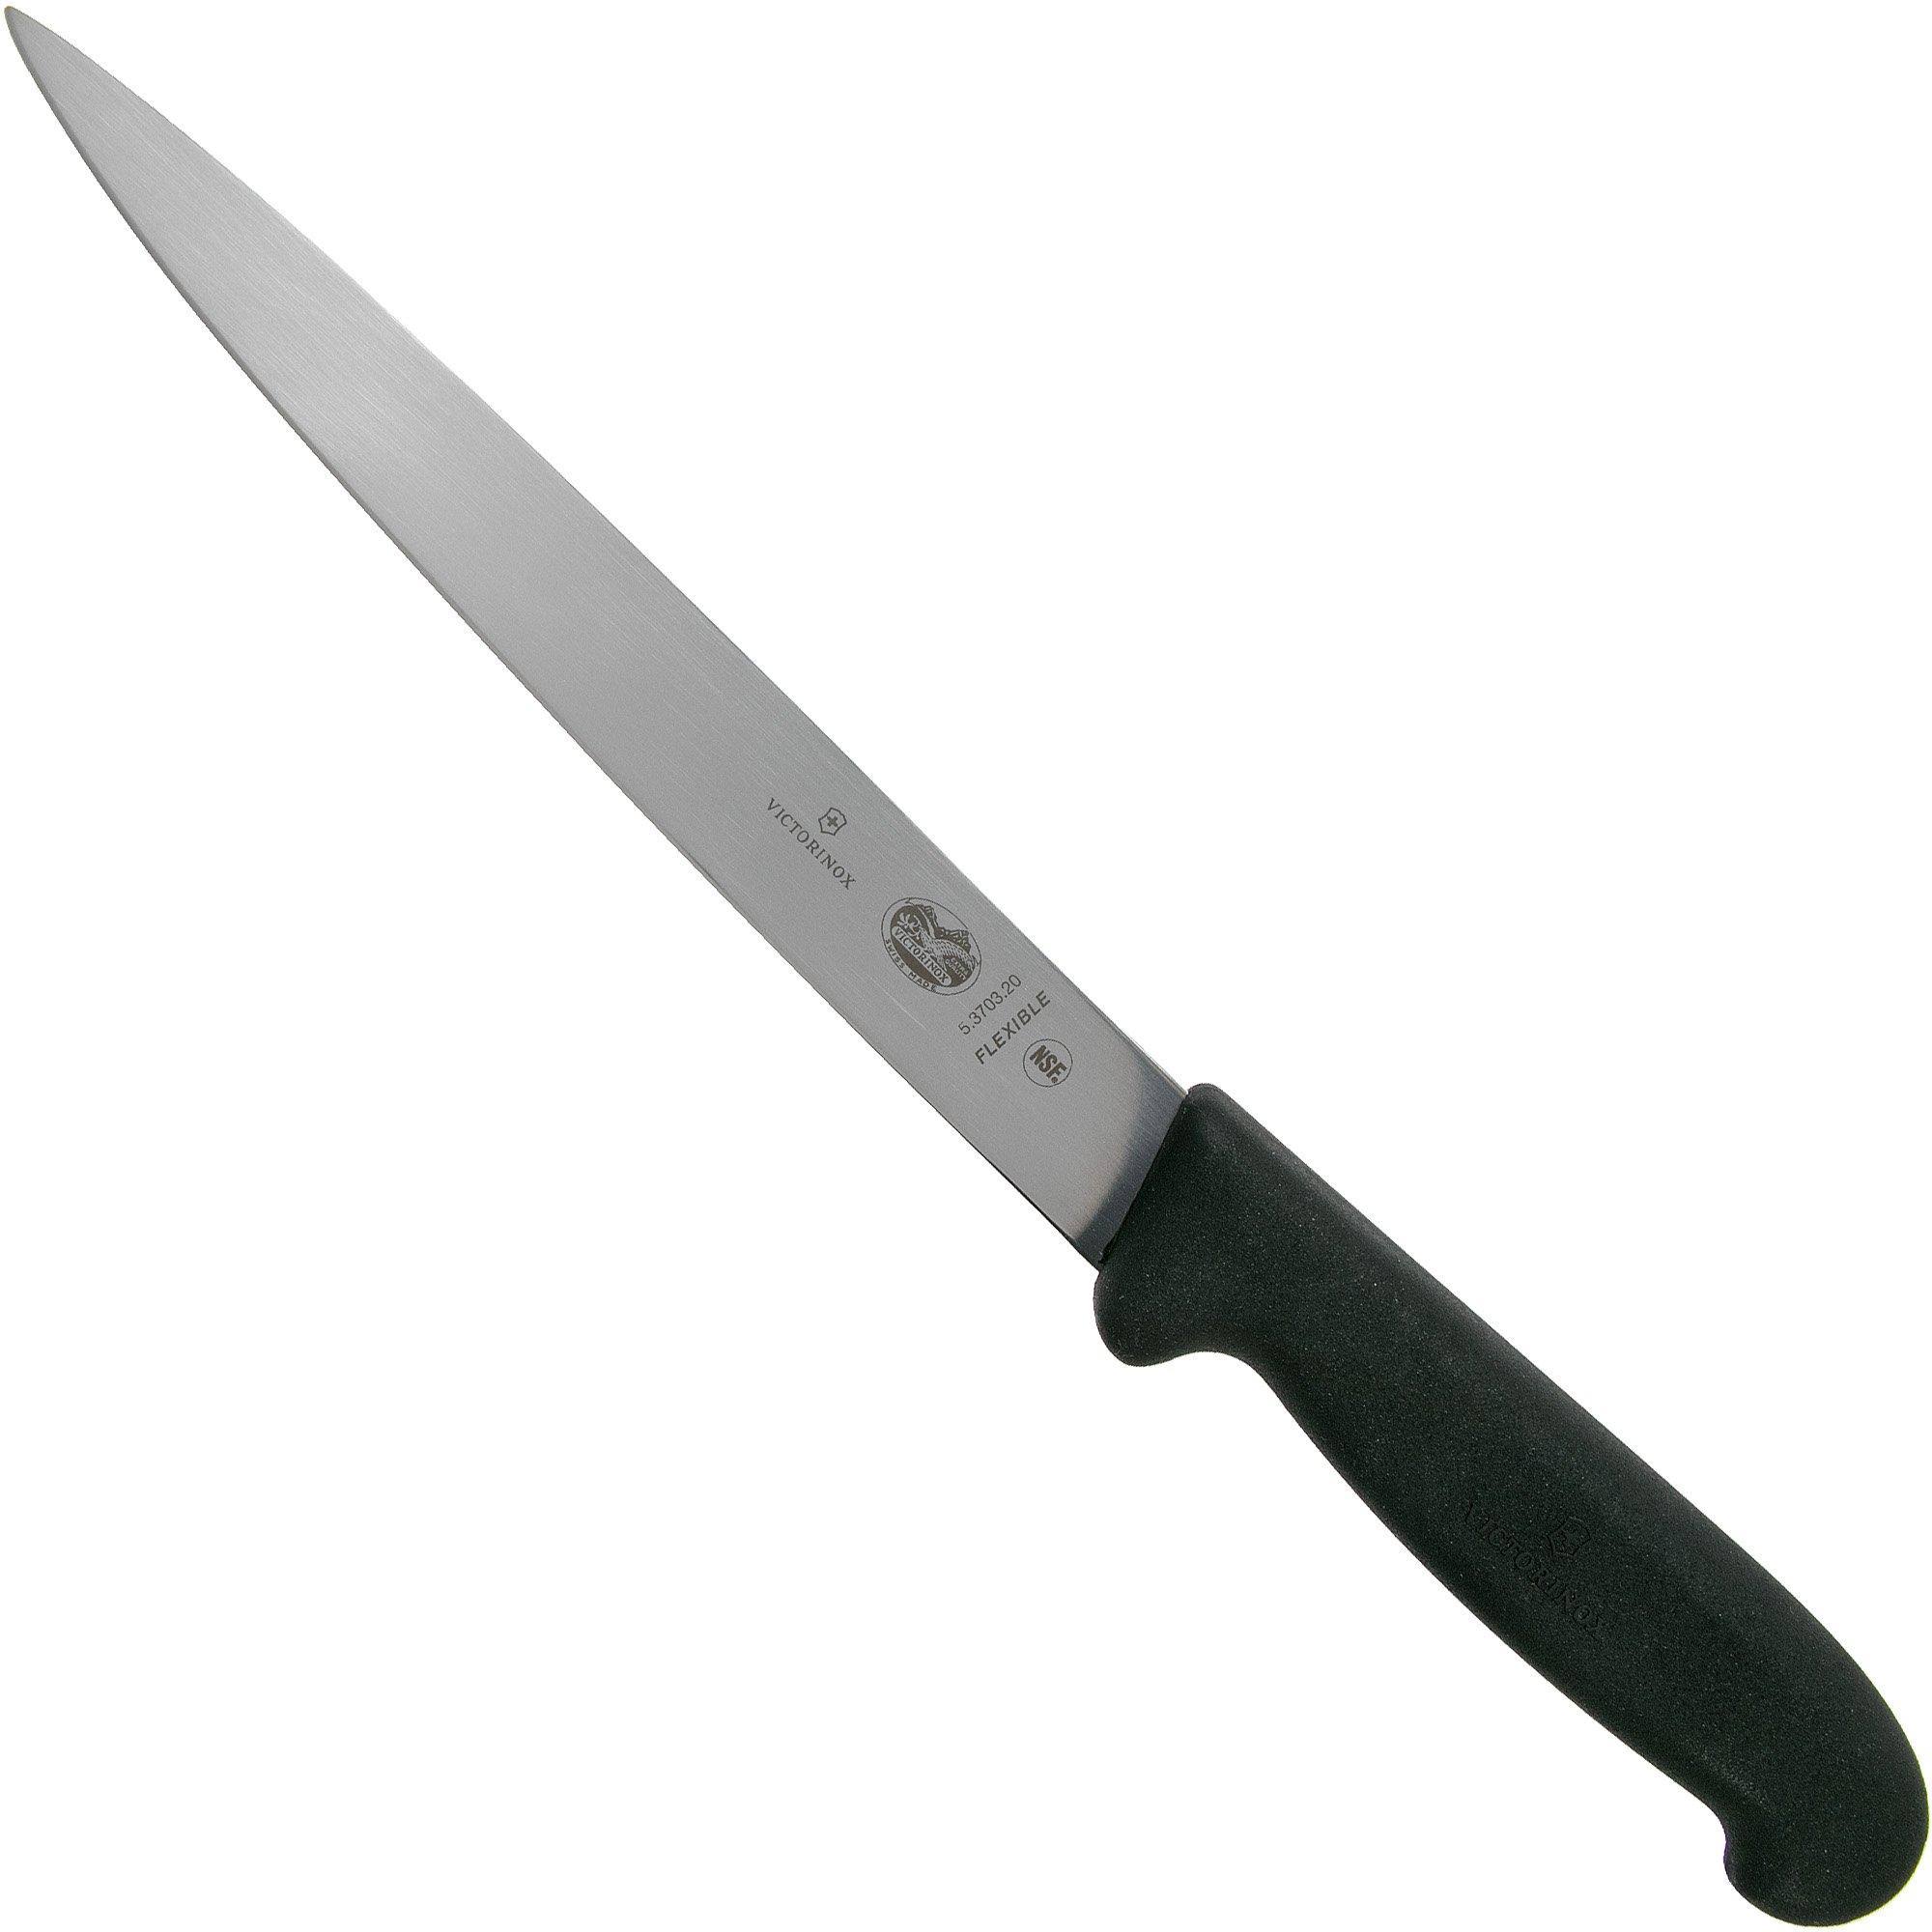 Victorinox Fibrox filleting knife 20 cm, 5-3703-20